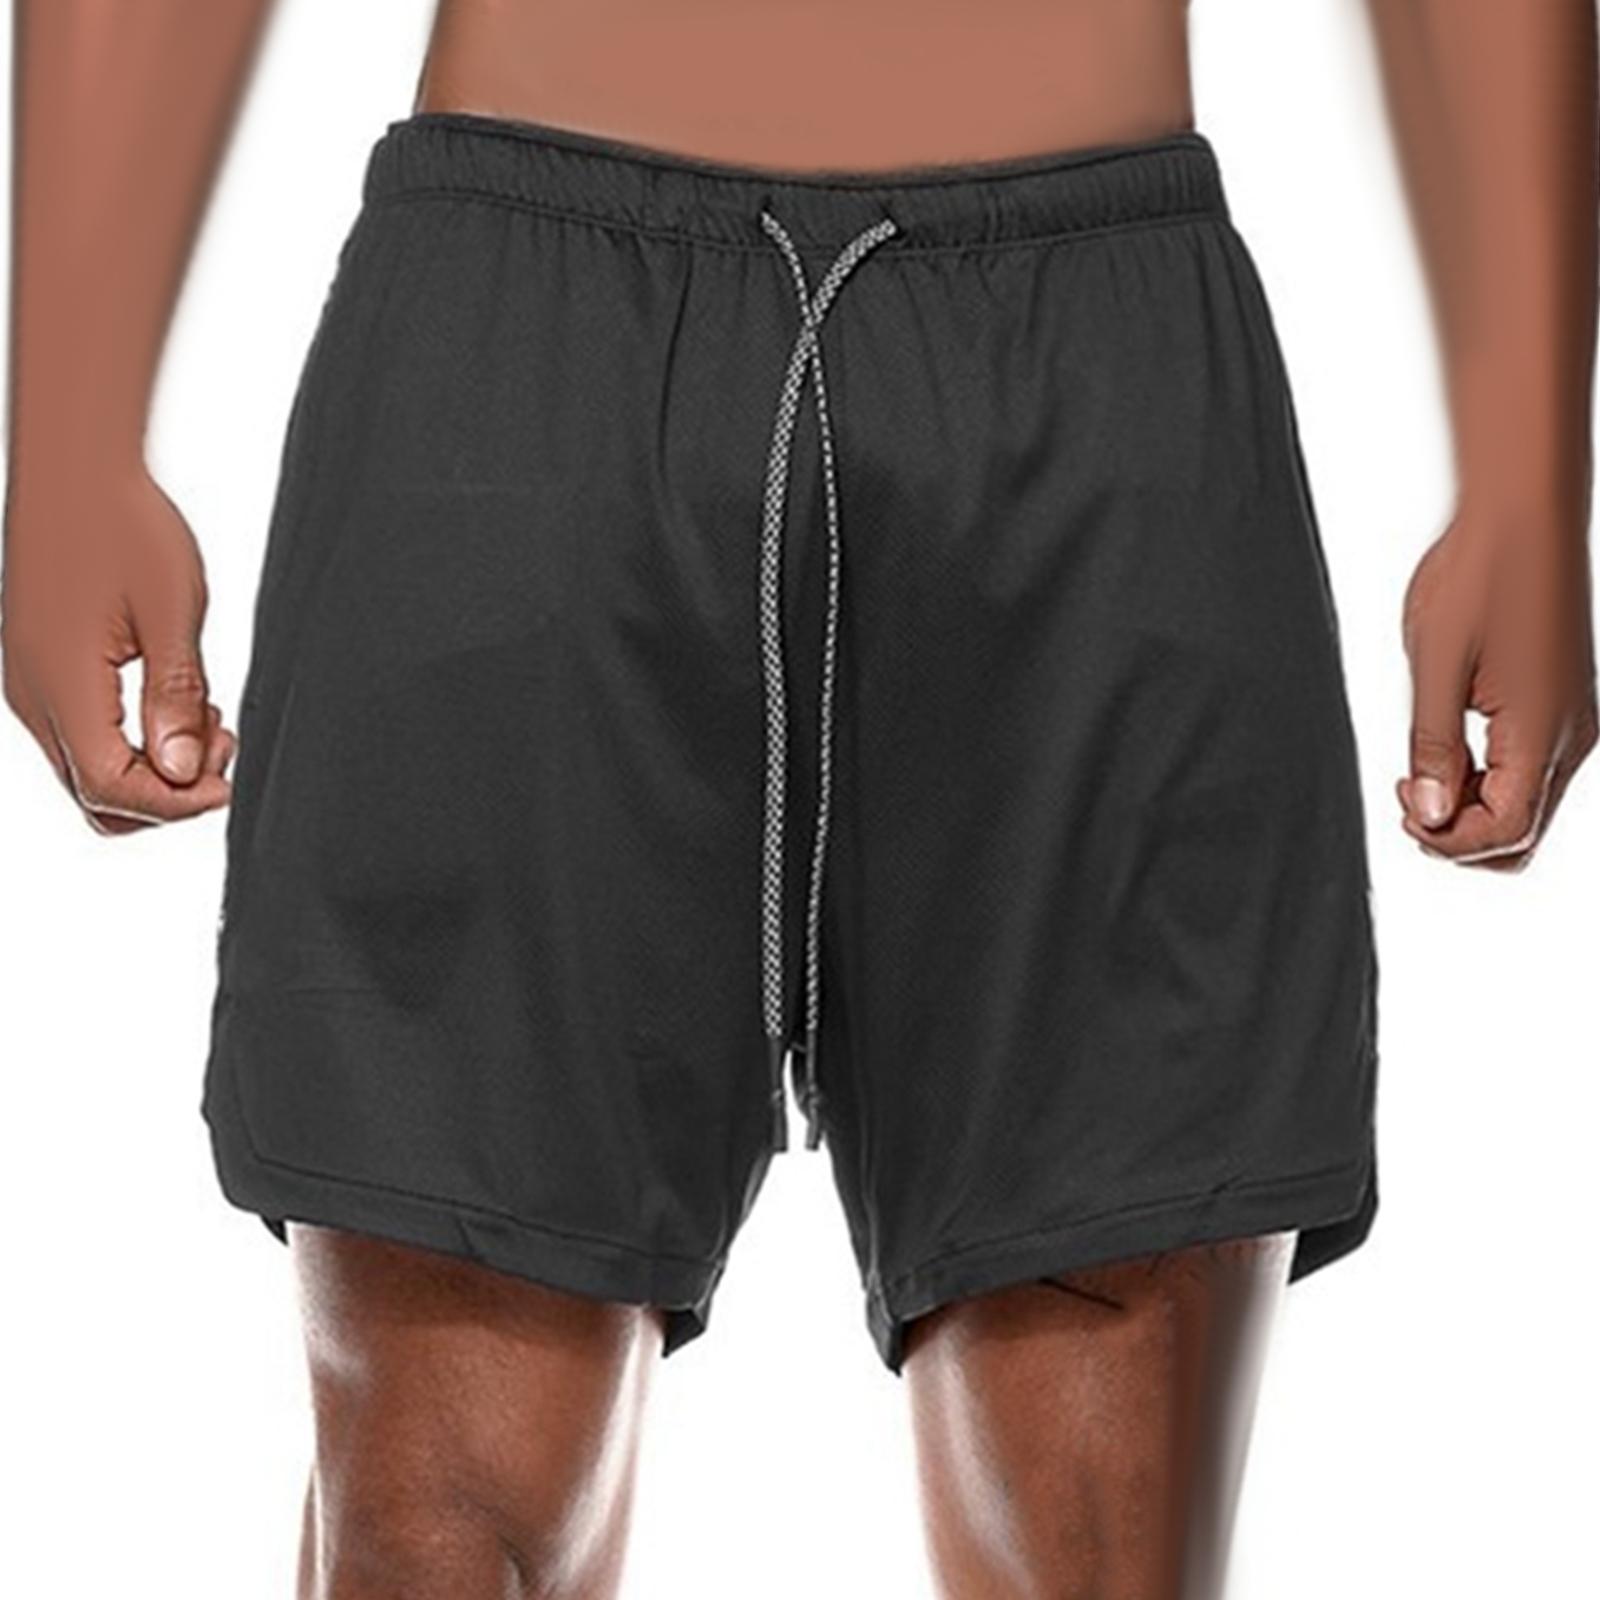 Men's 2 in 1 Running Shorts Summer Sports Shorts for Yoga Sports Training Black XXXL